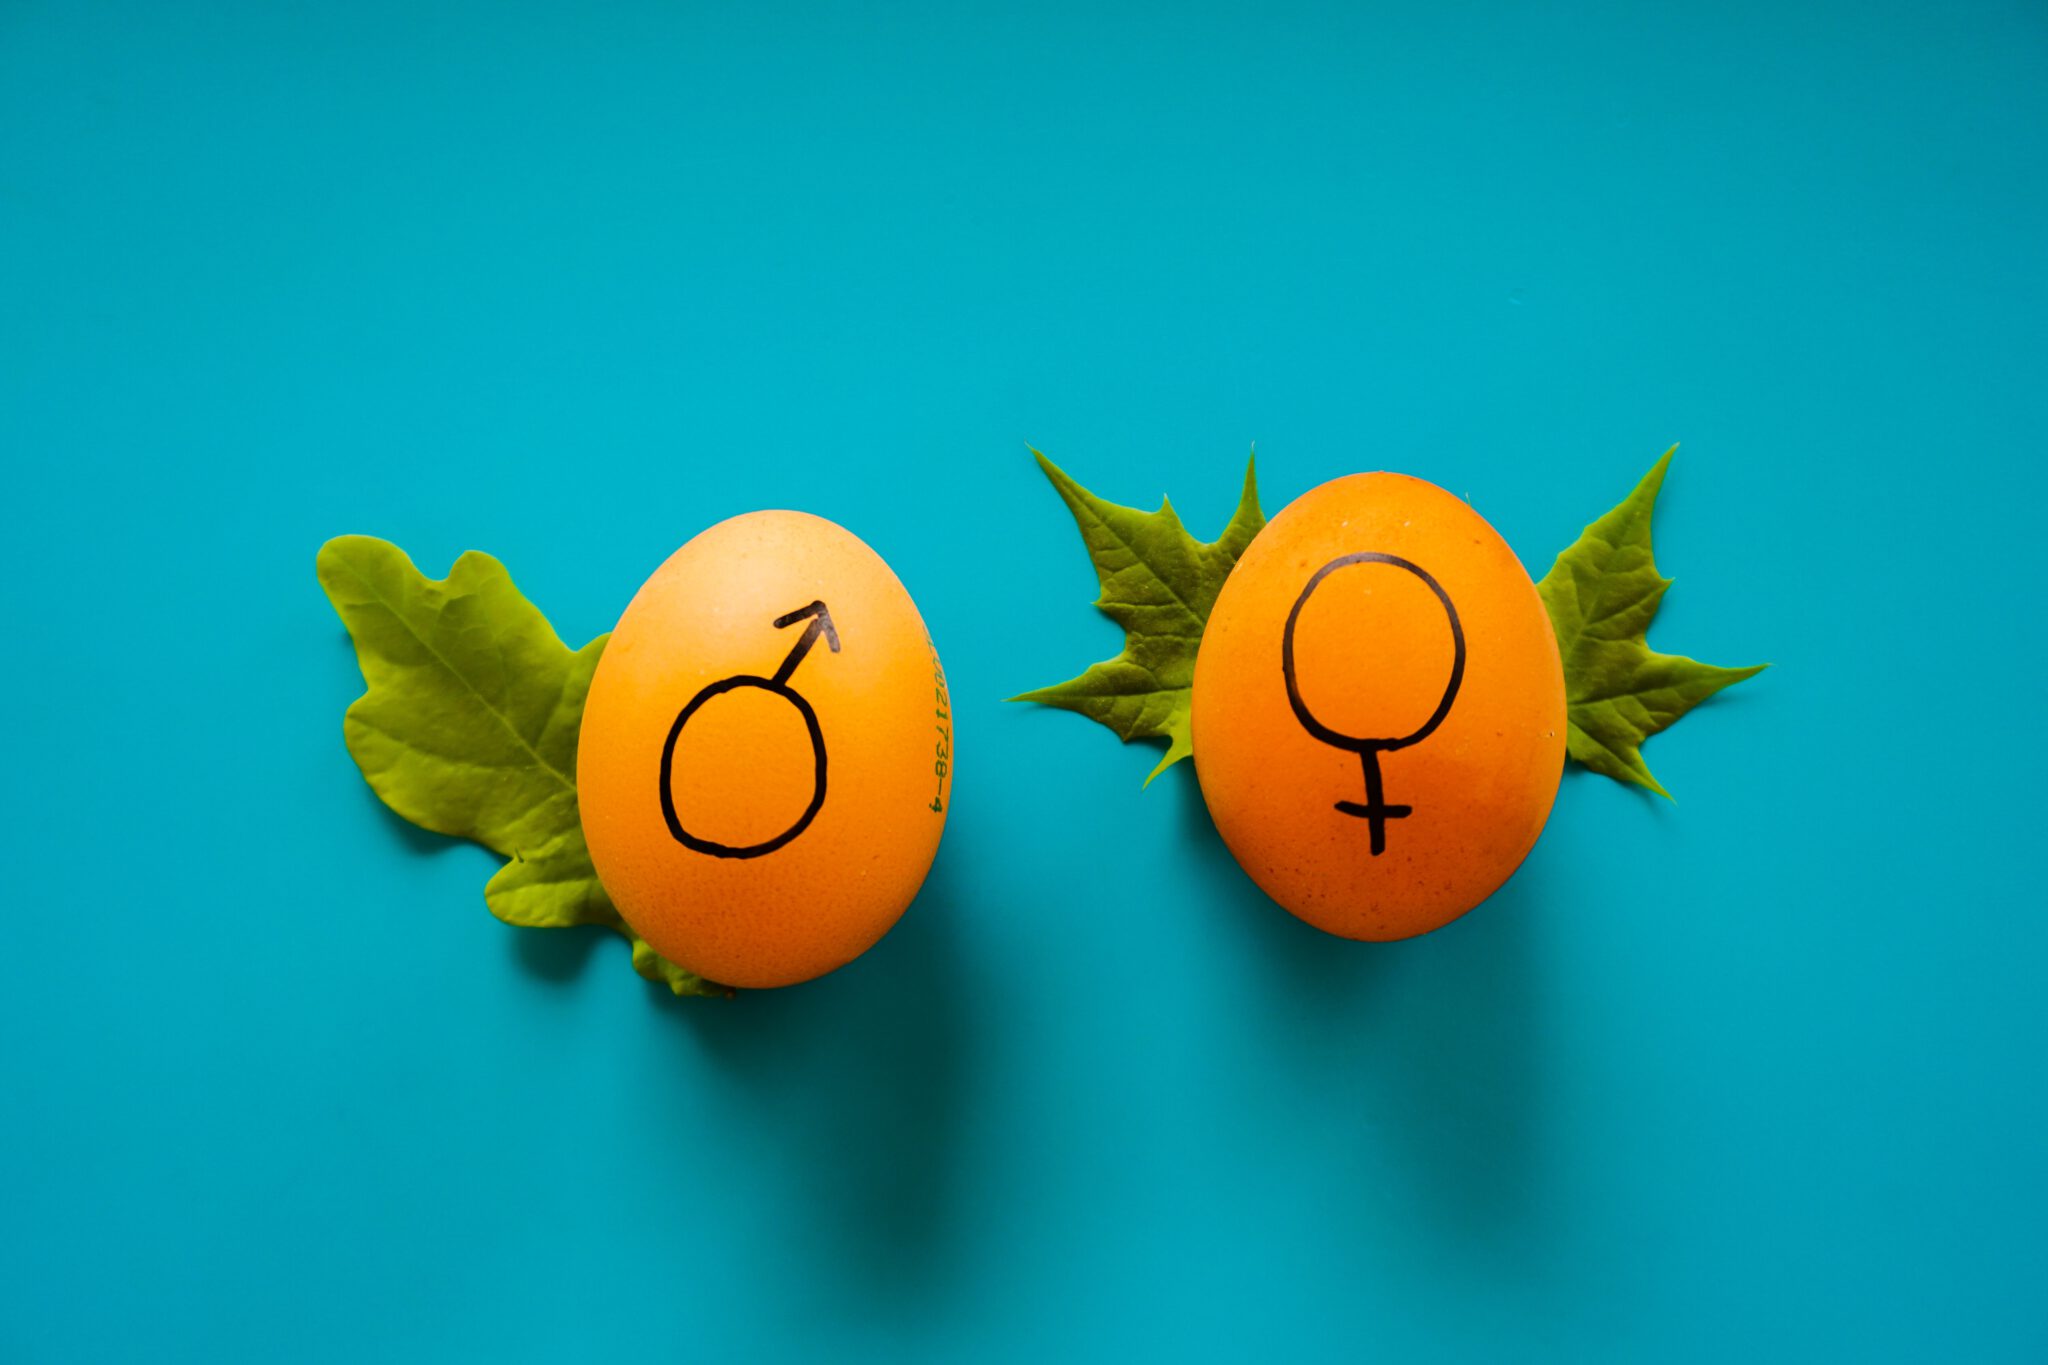 twee eitjes met tekening voor geslacht vrouw en man, wat symbool staat voor het voorspellen van het geslacht van je baby